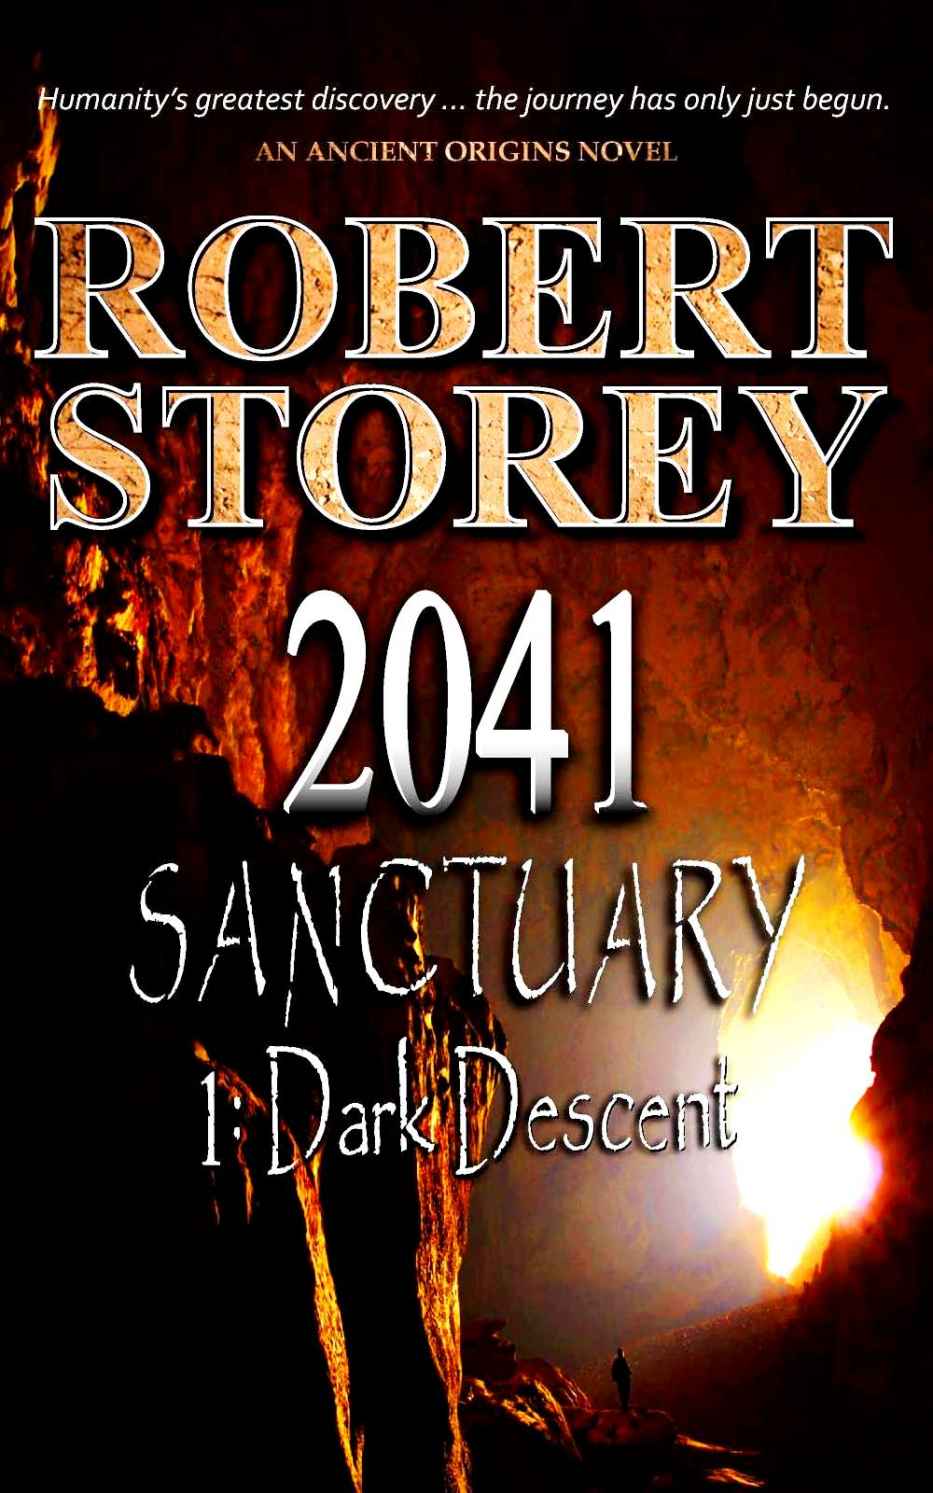 2041 Sanctuary (Dark Descent) by Robert Storey